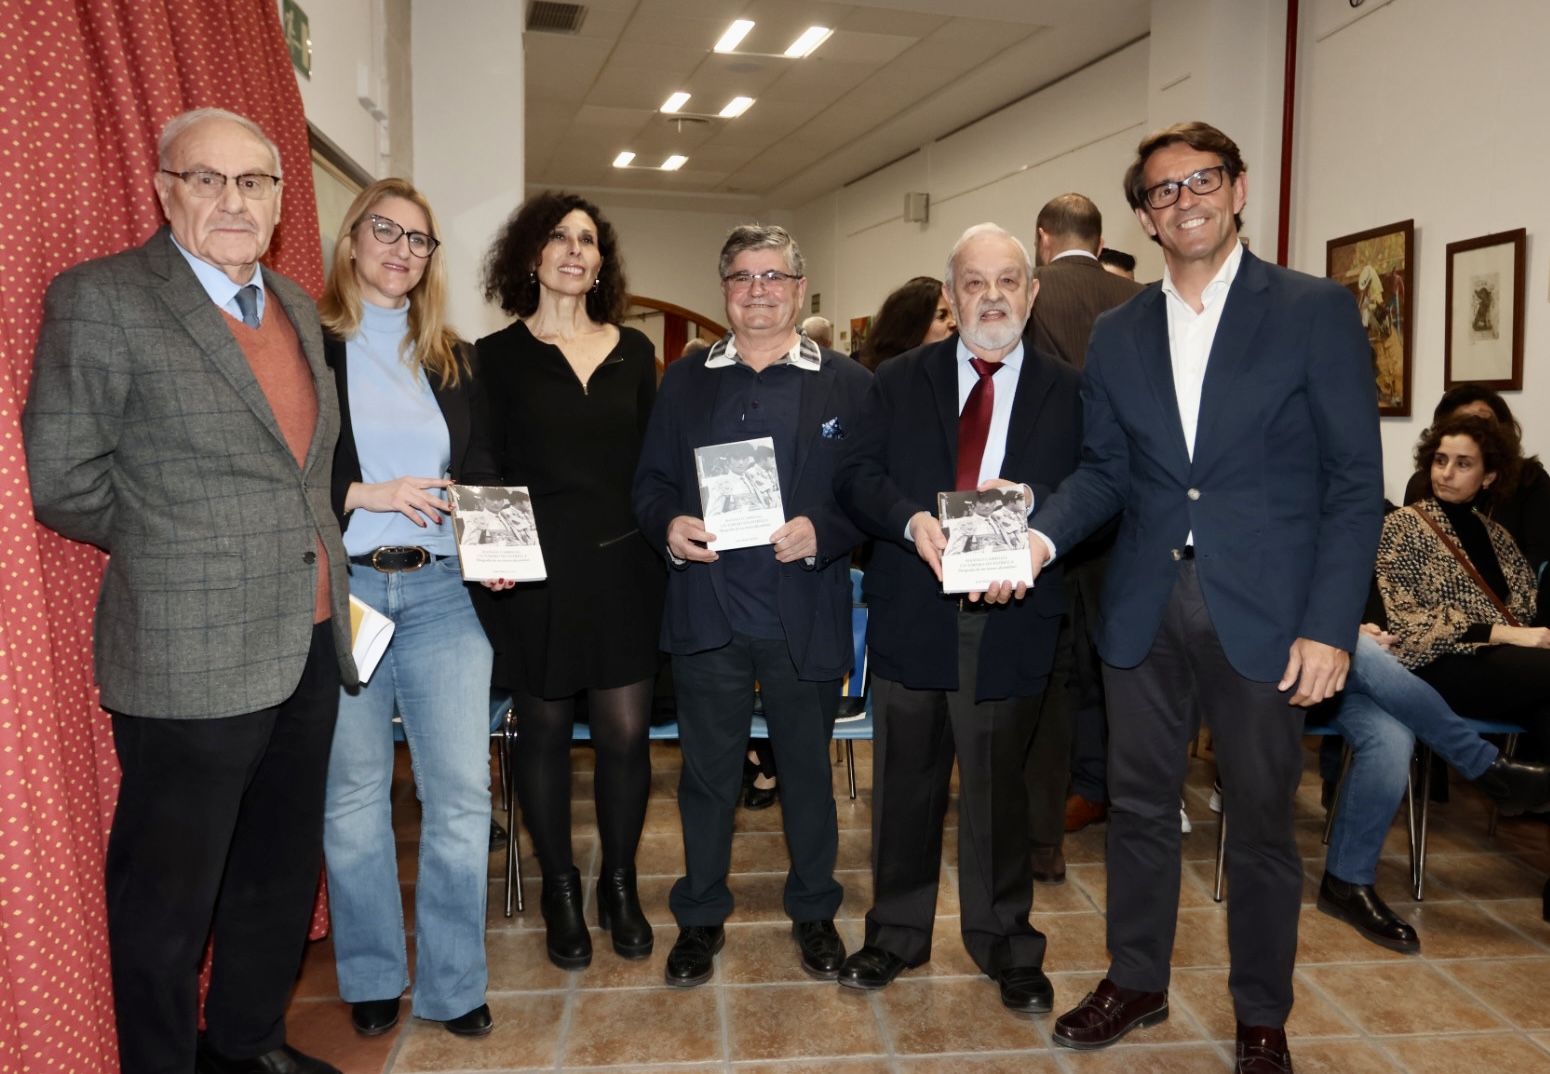 Presentación en el Museo Taurino de Alicante del libro “Manolo Carrillo, un torero sin estrella”